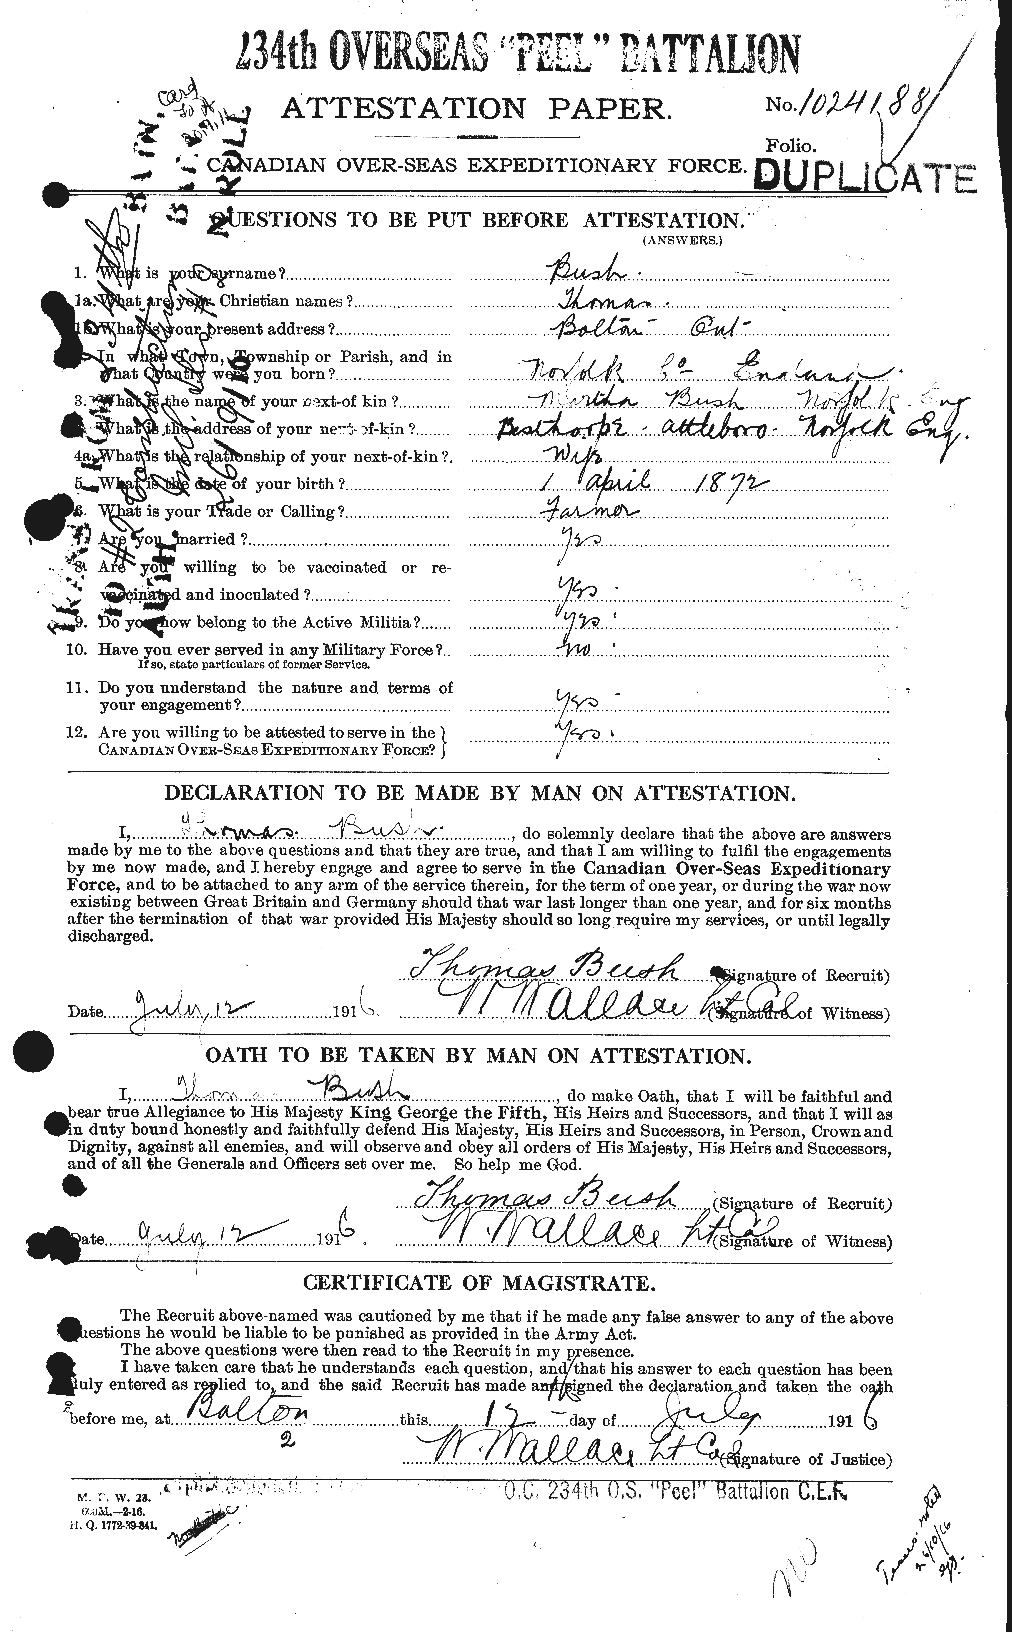 Dossiers du Personnel de la Première Guerre mondiale - CEC 274426a